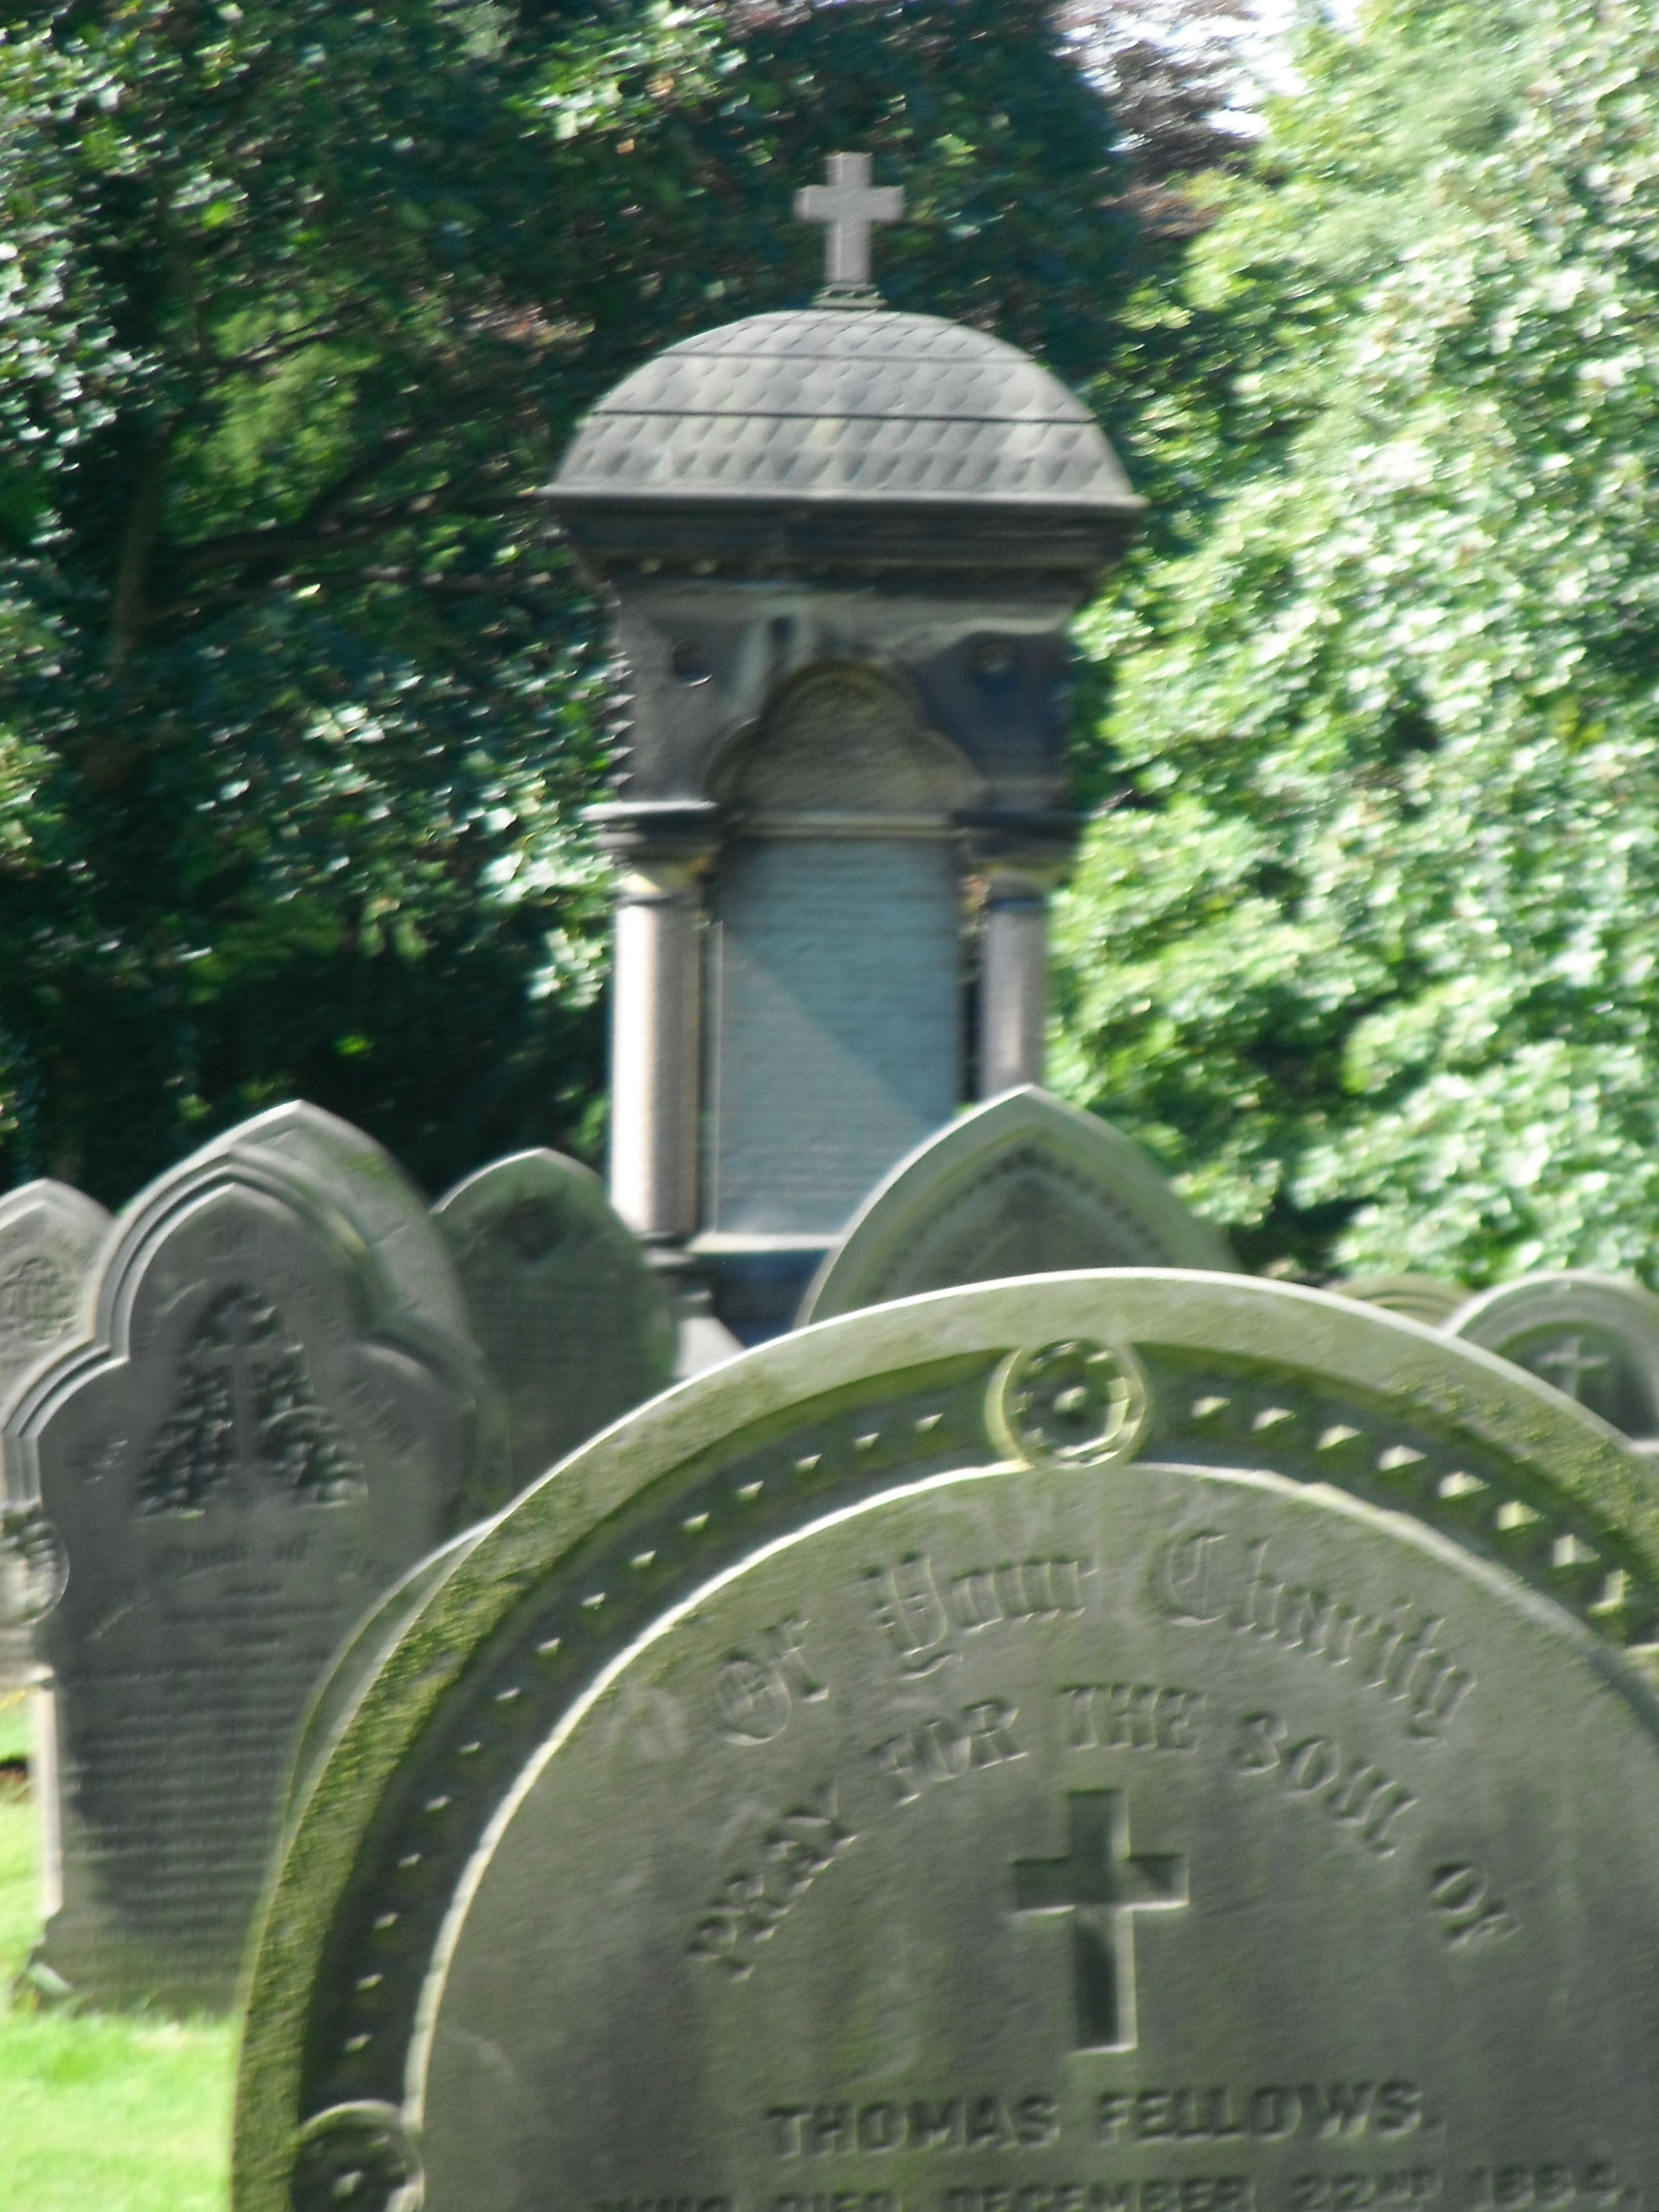 Photo taken by me - Cemetery grave in Preston 